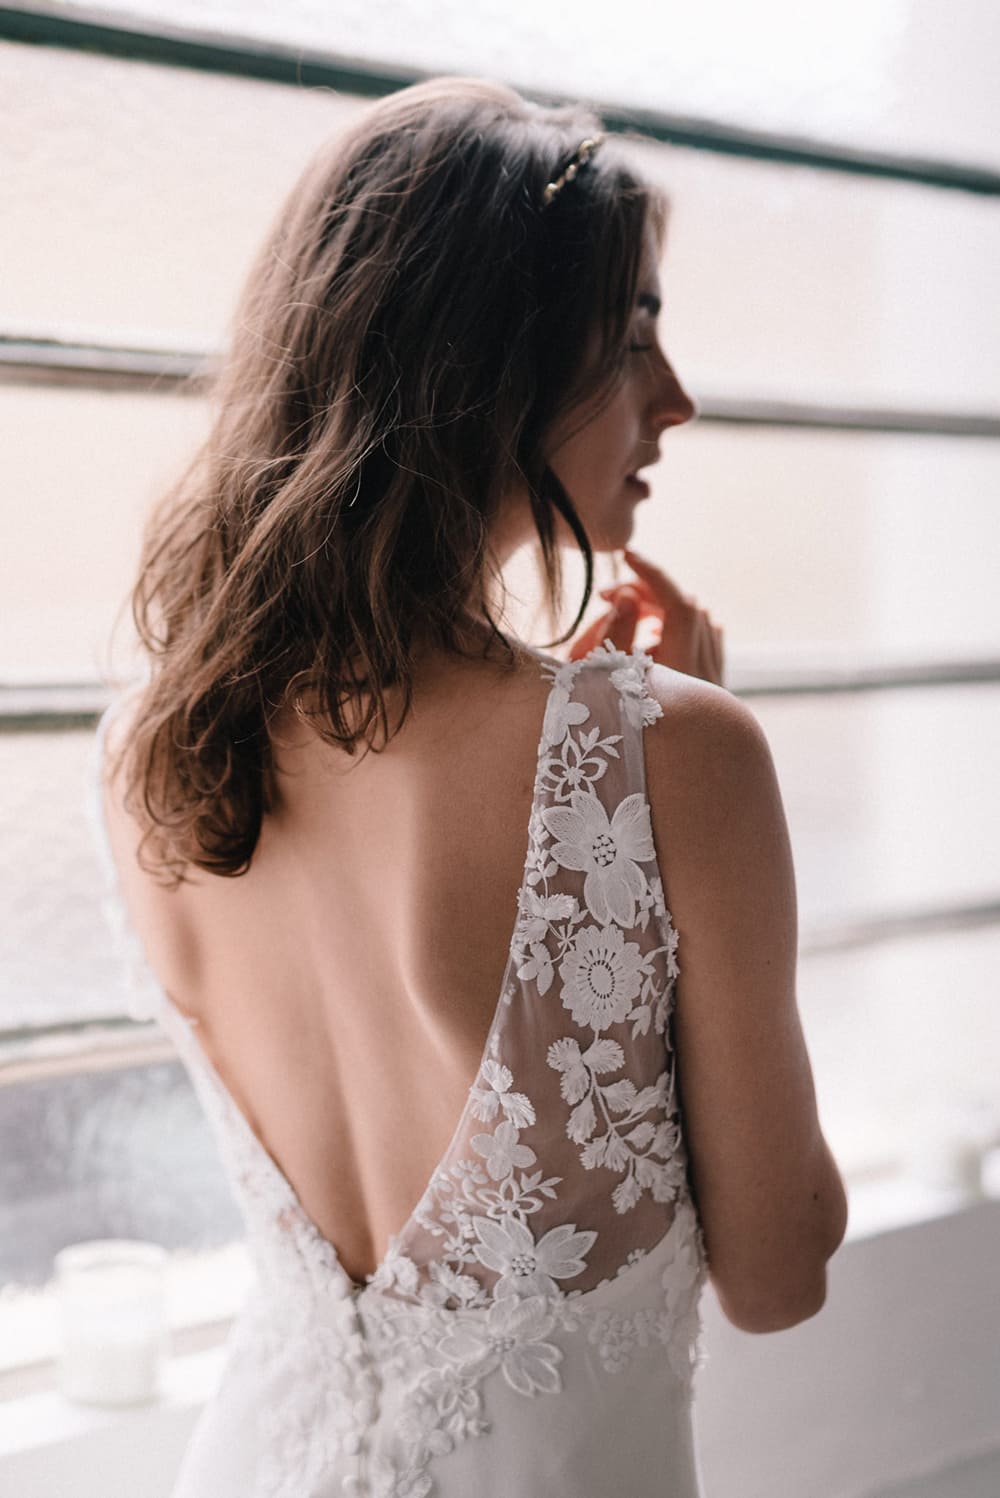 Jolie robe de mariée Aurélia HOANG 2018